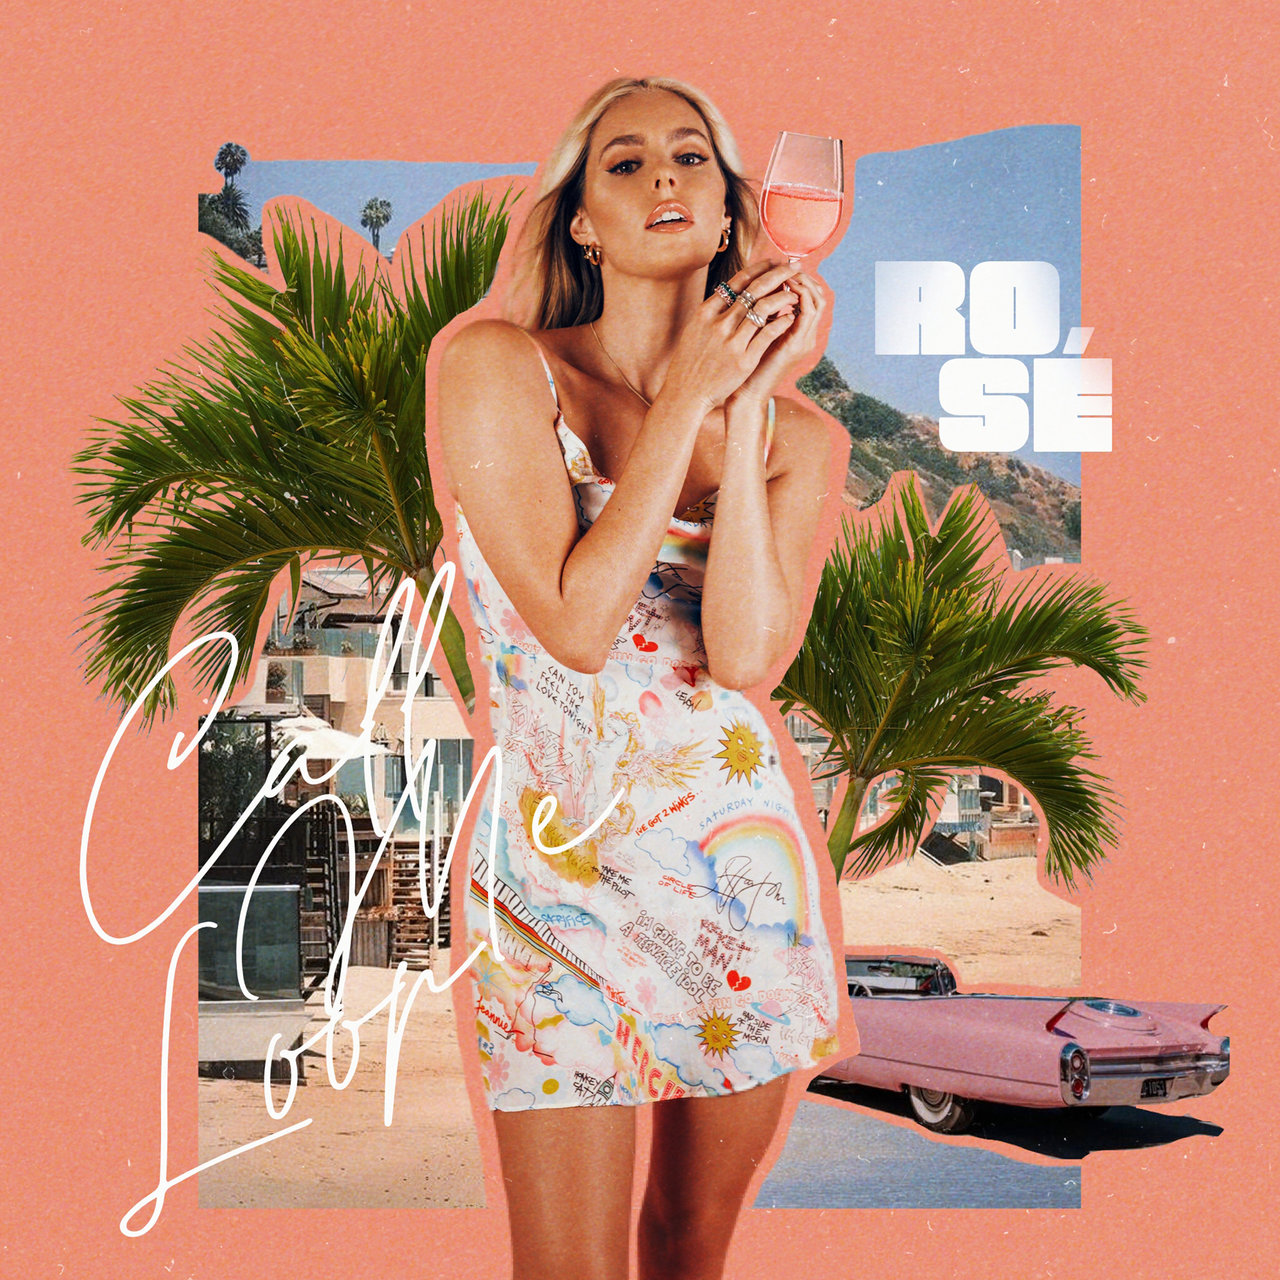 Call Me Loop — Rosé cover artwork